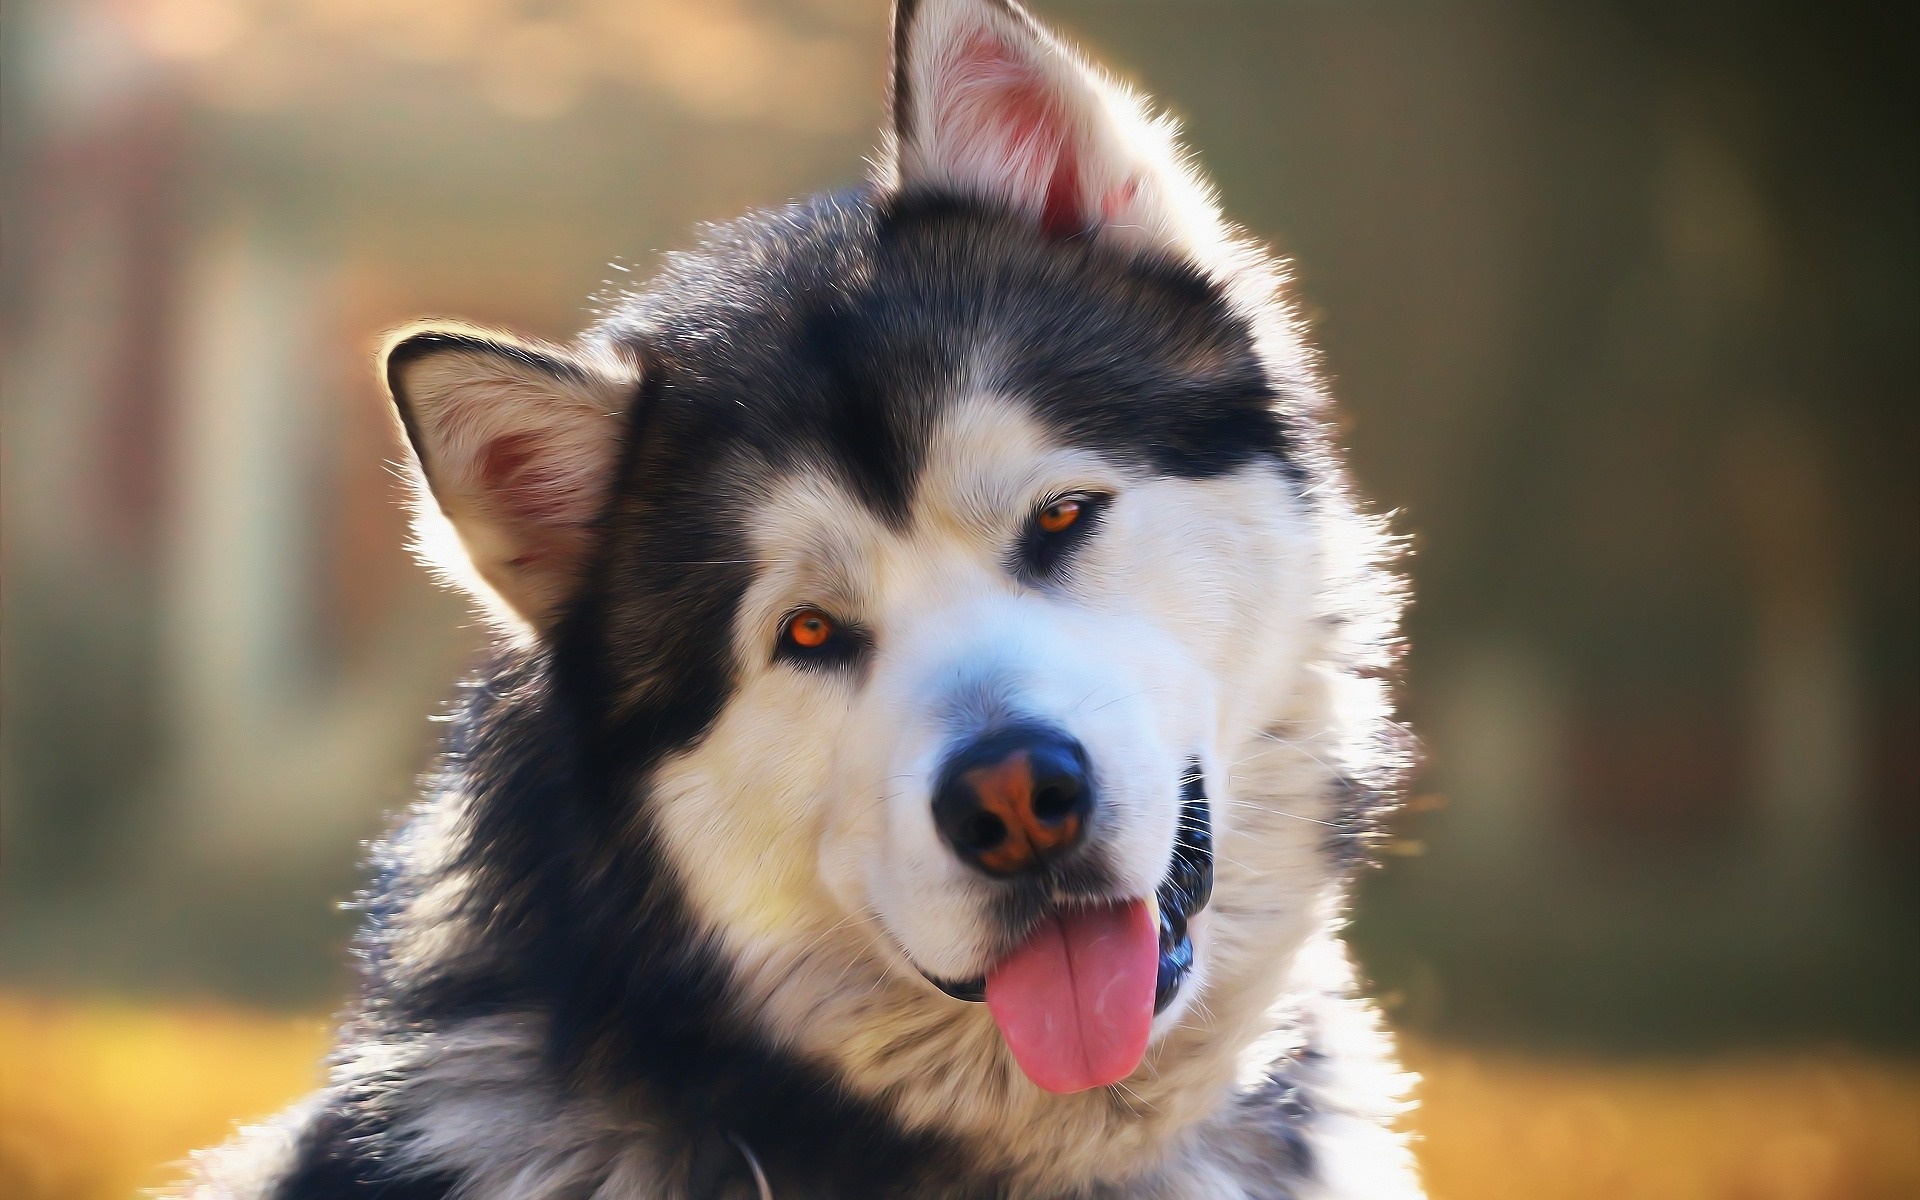 Alaskan Malamute portrait, Big dog, Malamute breed, Cute animals, 1920x1200 HD Desktop